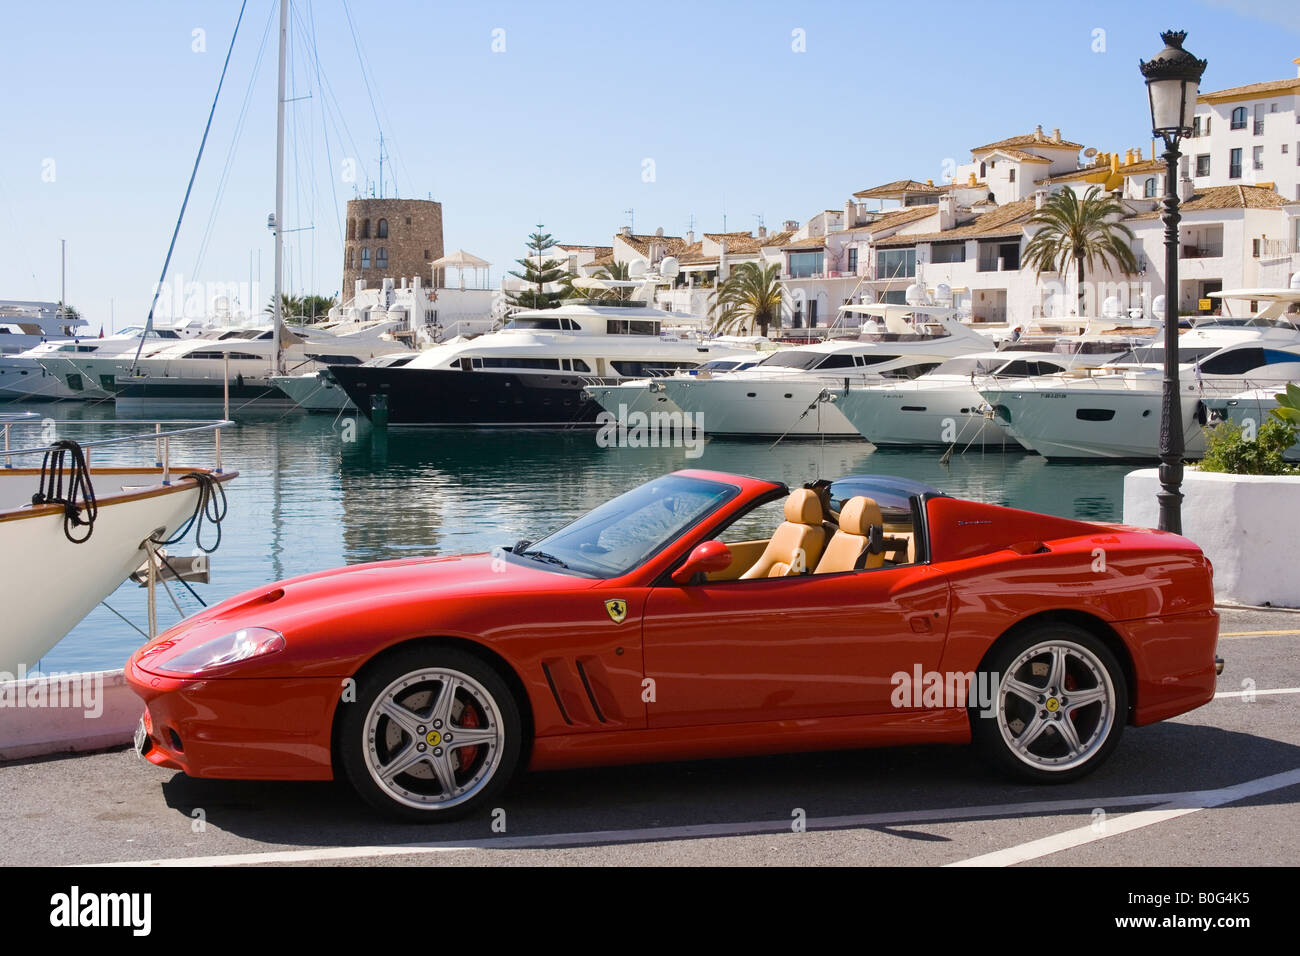 Marbella Costa del Sol Malaga Province Spain Puerto Jose Banus Red Ferrari parked on port side Stock Photo